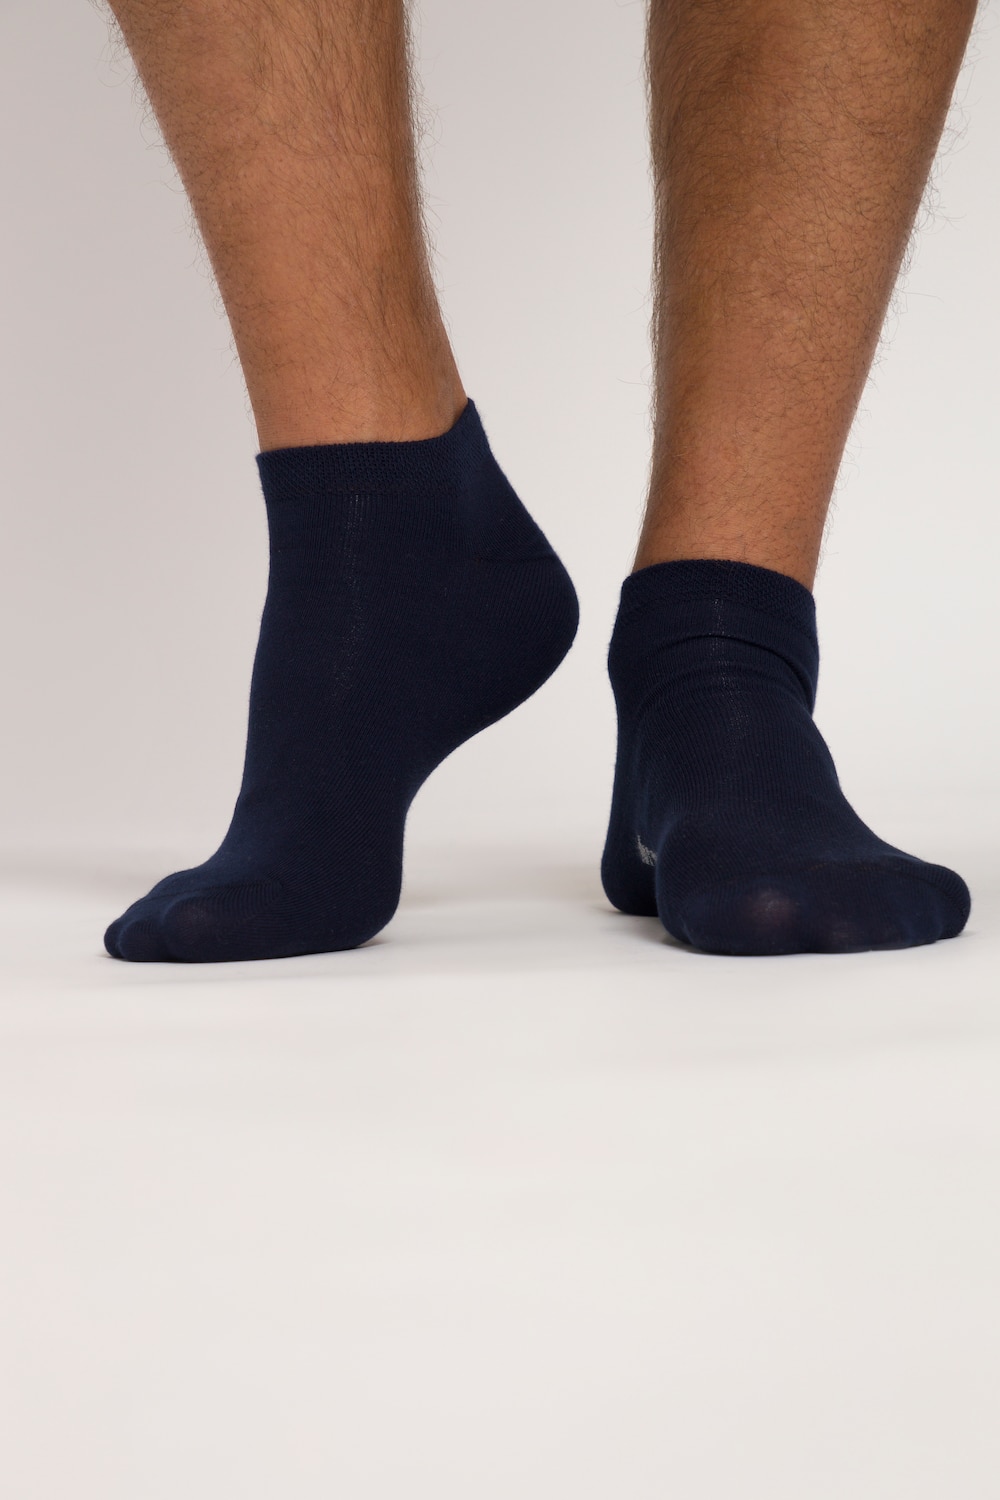 grandes tailles chaussettes pour sneakers, hommes, bleu, taille: 51-53, coton/fibres synthétiques, jp1880